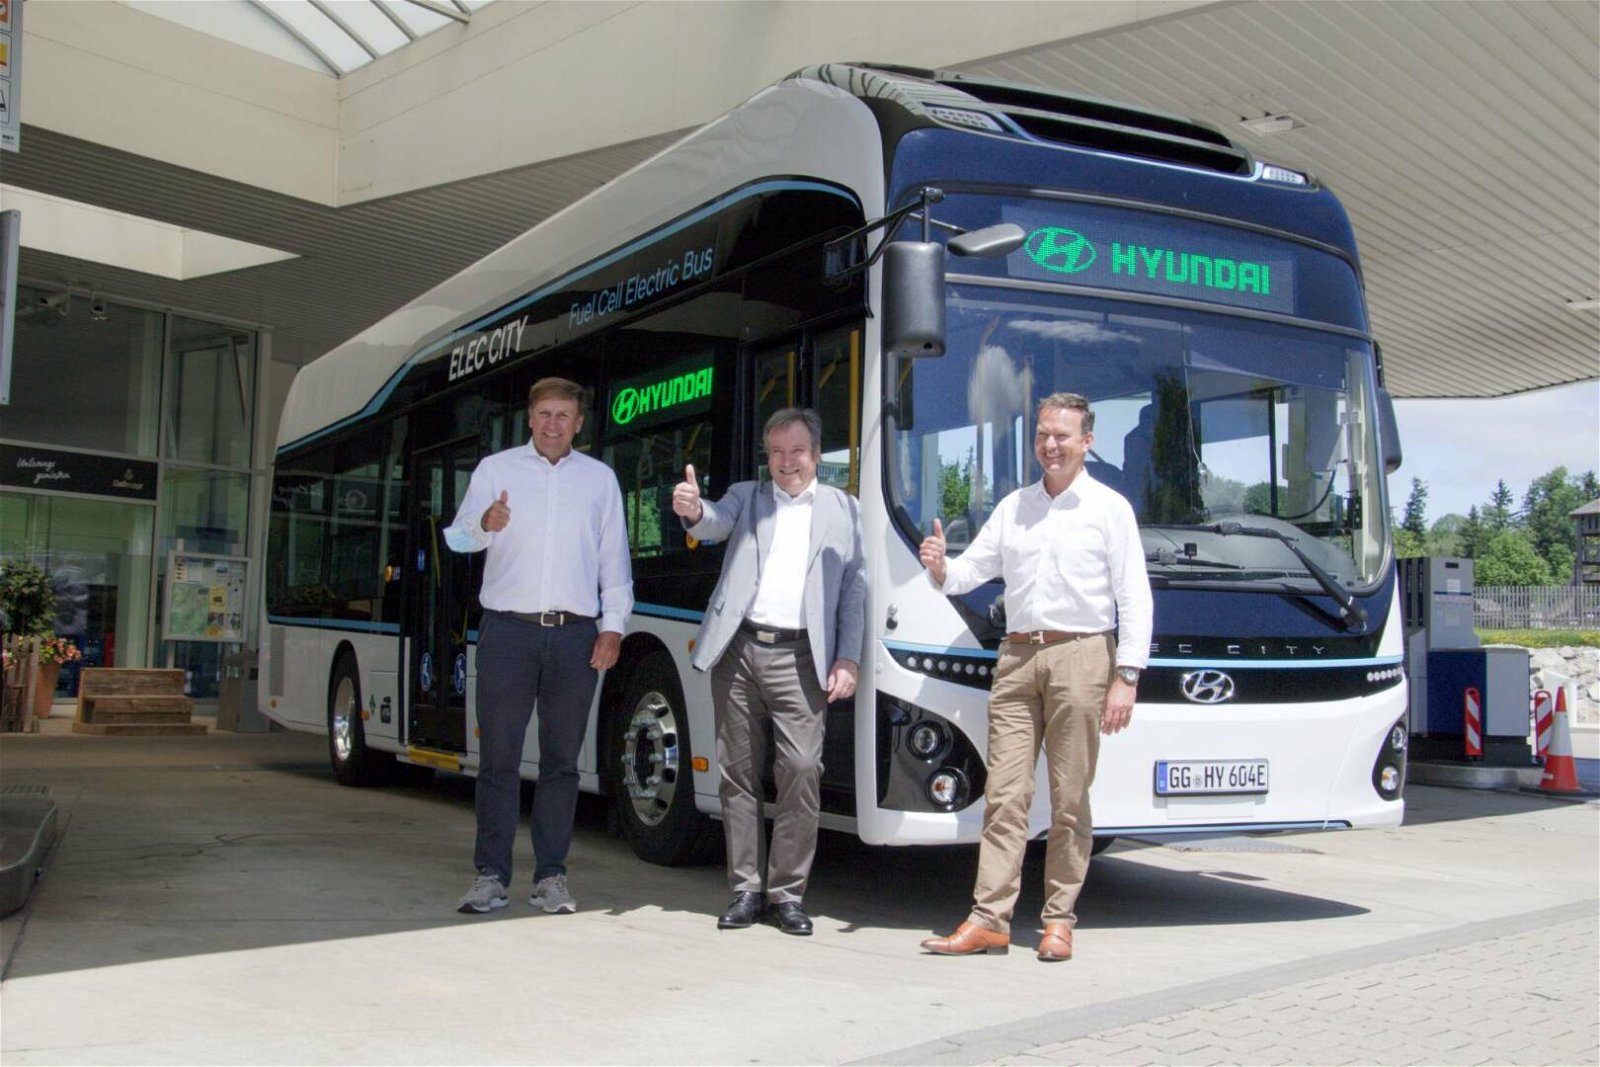 Immagine di Hyundai, al via il servizio di prova del suo autobus Elec City Fuel Cell